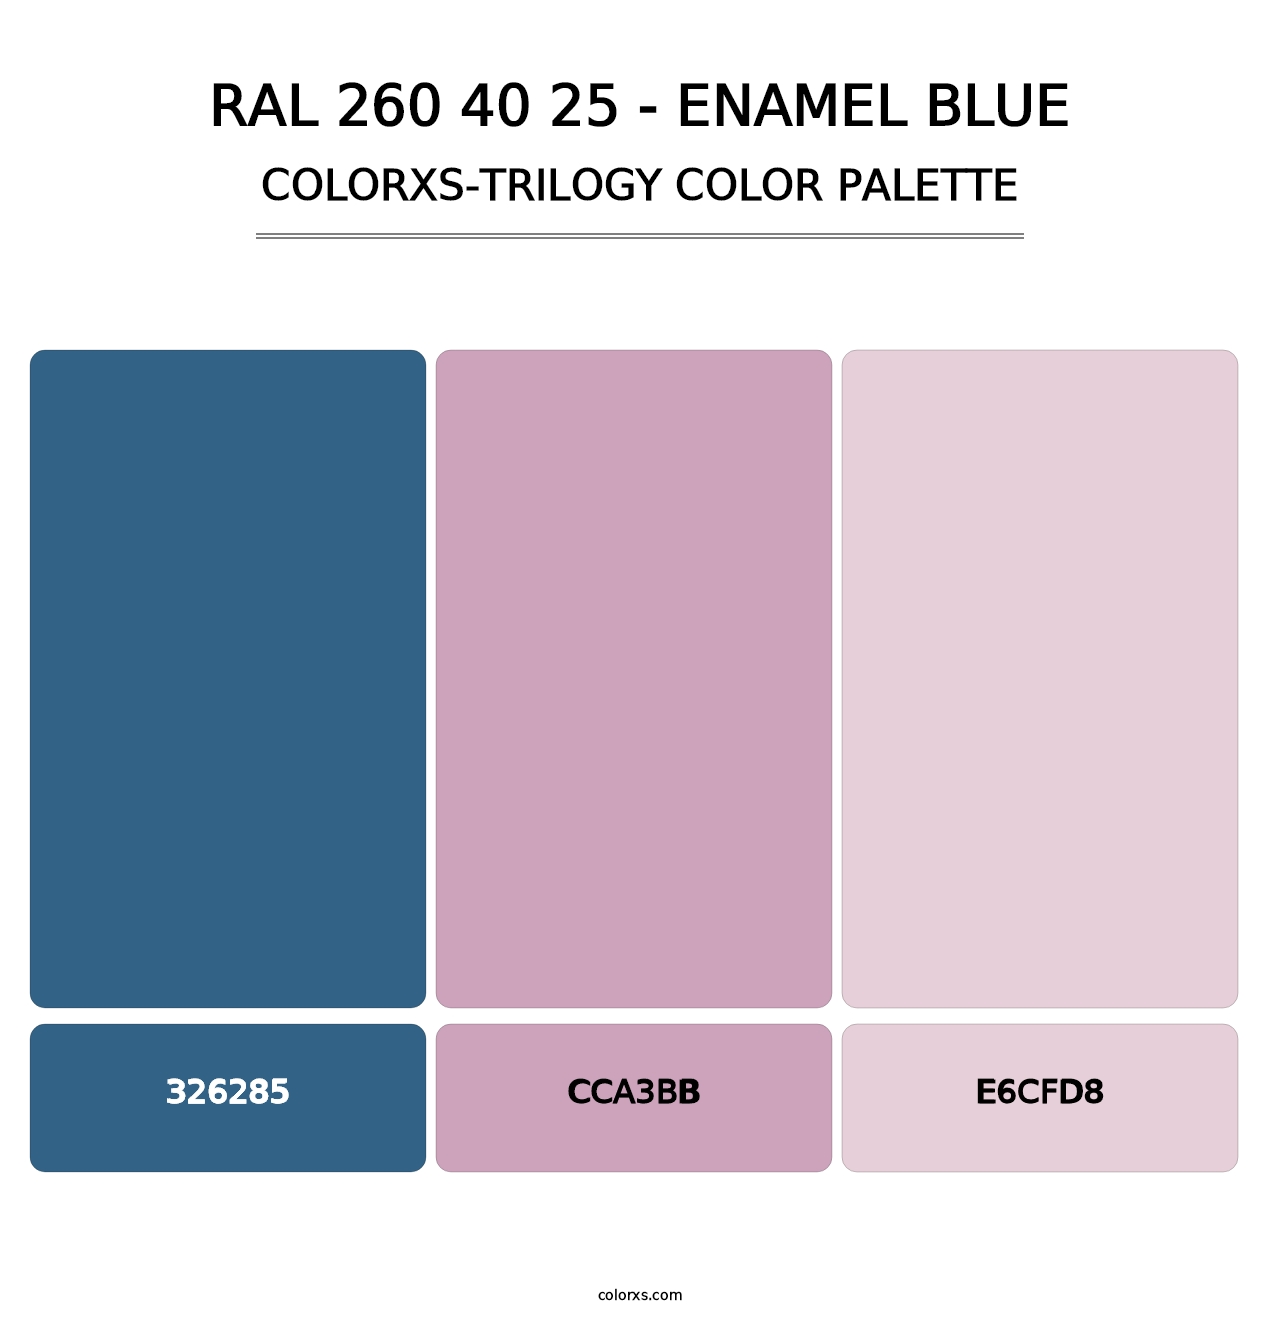 RAL 260 40 25 - Enamel Blue - Colorxs Trilogy Palette